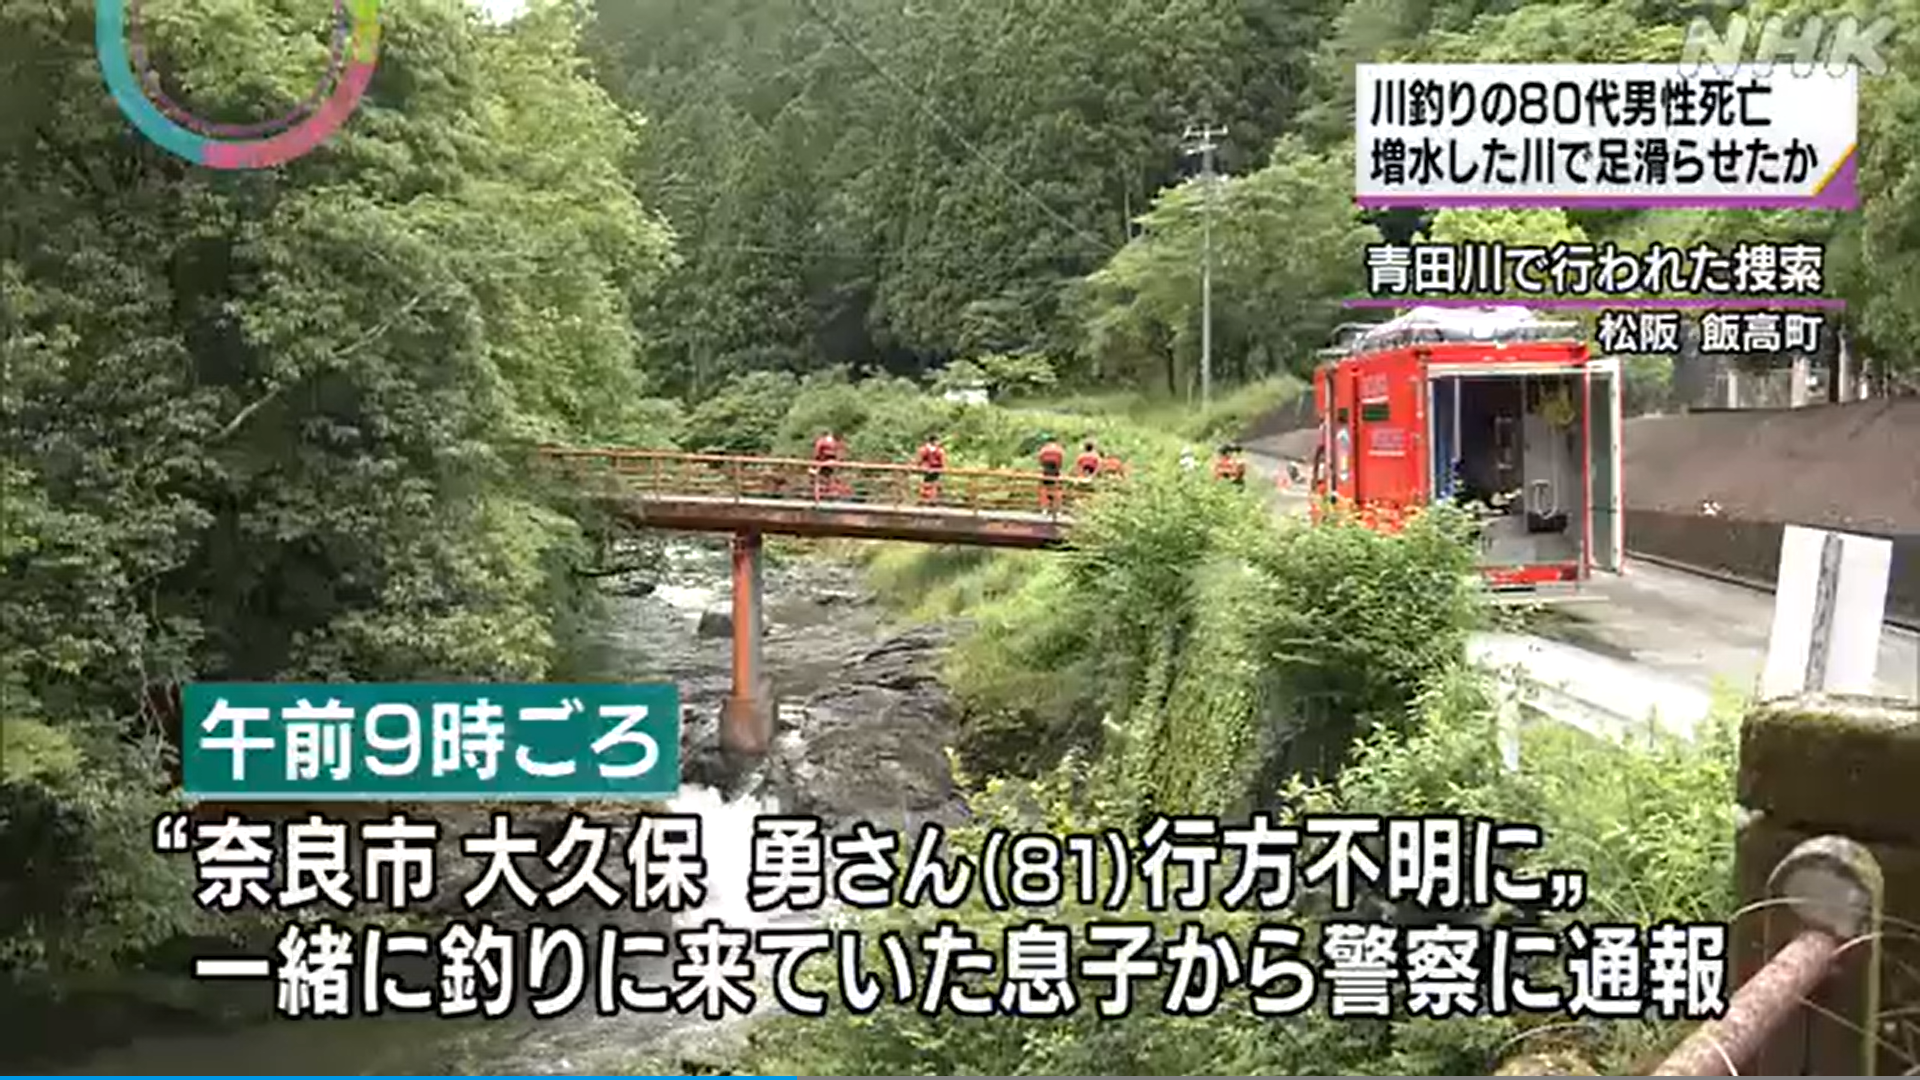 三重県松坂市の青田川で渓流釣りの男性が川に流され死亡